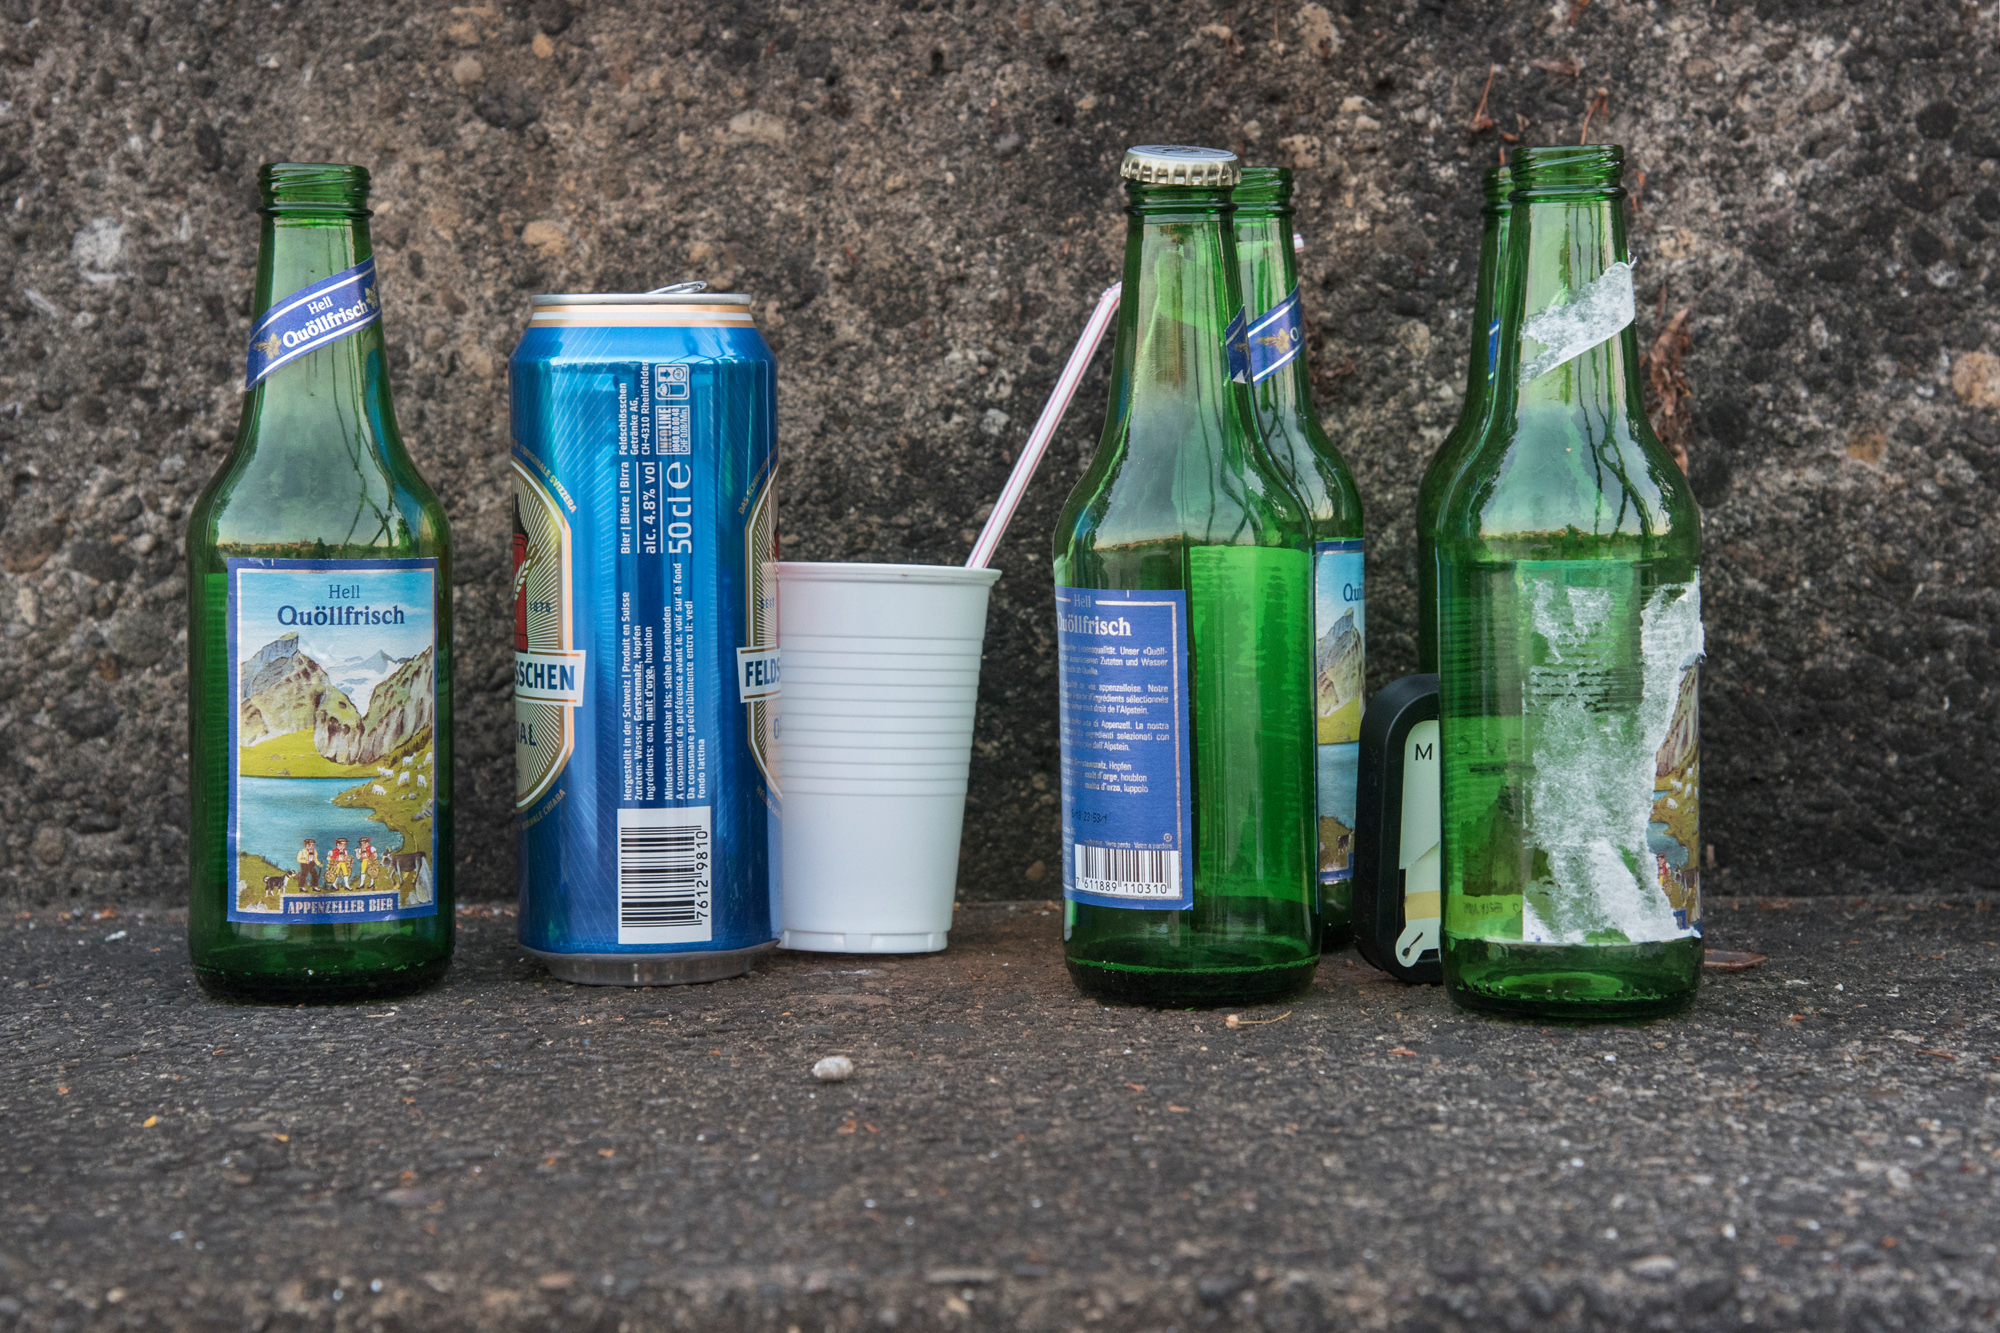 Ein häufiges Bild: Bierdosen und leere Flaschen, die im Alkoholrausch nicht mehr korrekt entsorgt wurden.